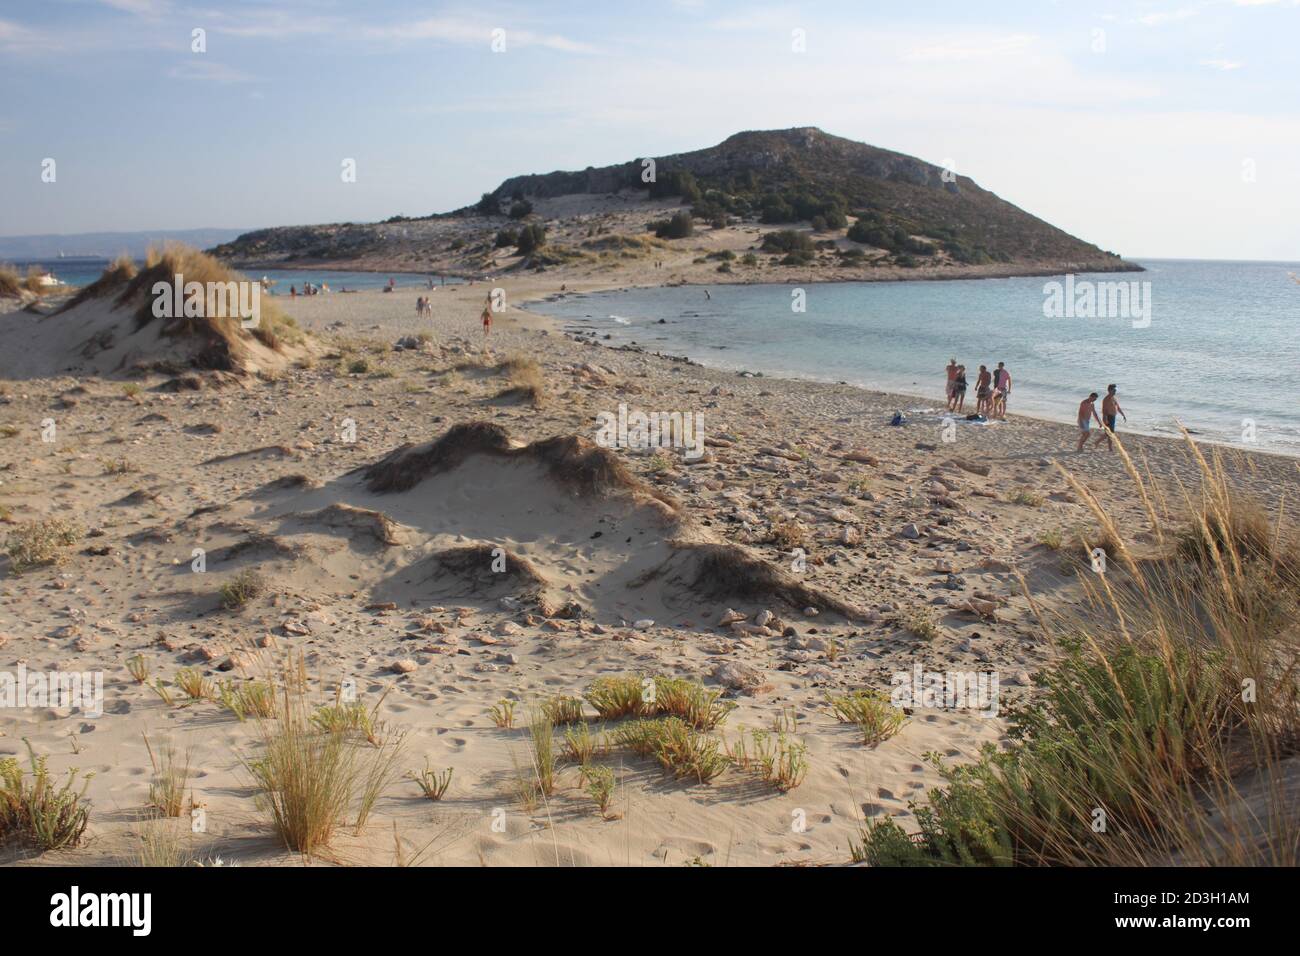 The famous Simos Beach in Elafonisos island , Greece Stock Photo